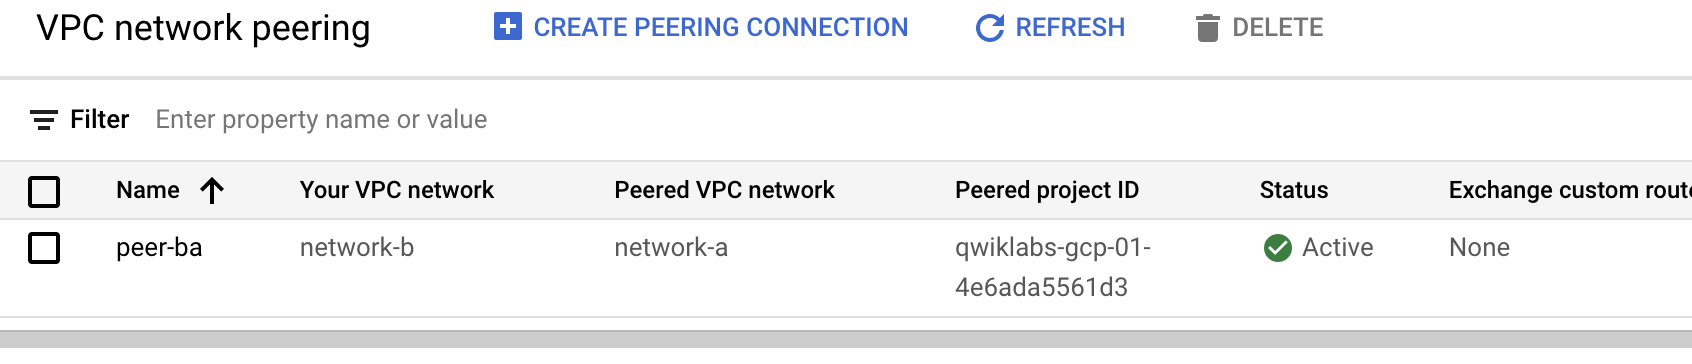 VPC network peering.png